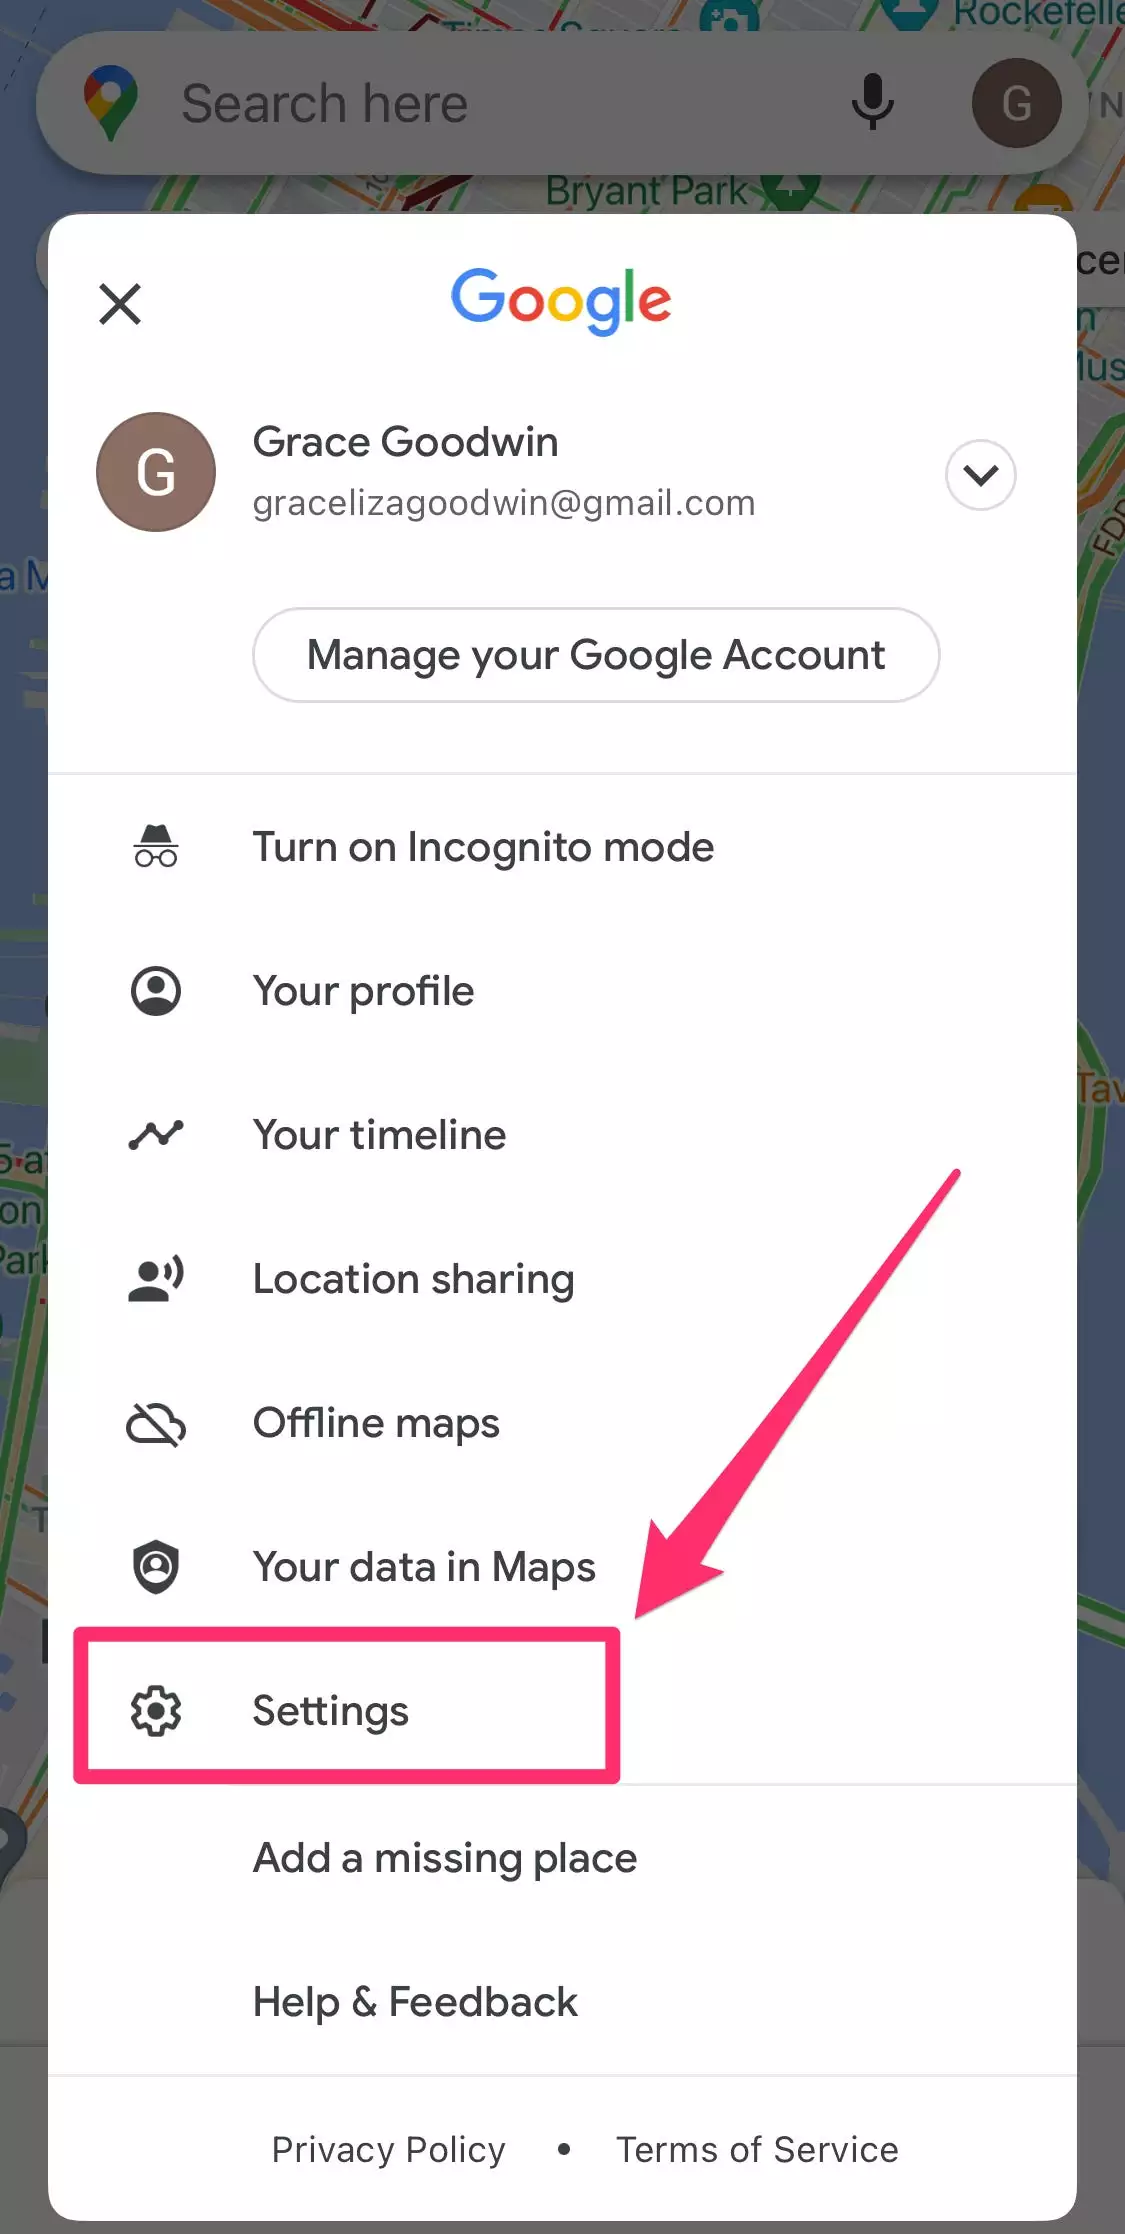 如何在 Google 地图上为任何商家或景点撰写 Google 评论